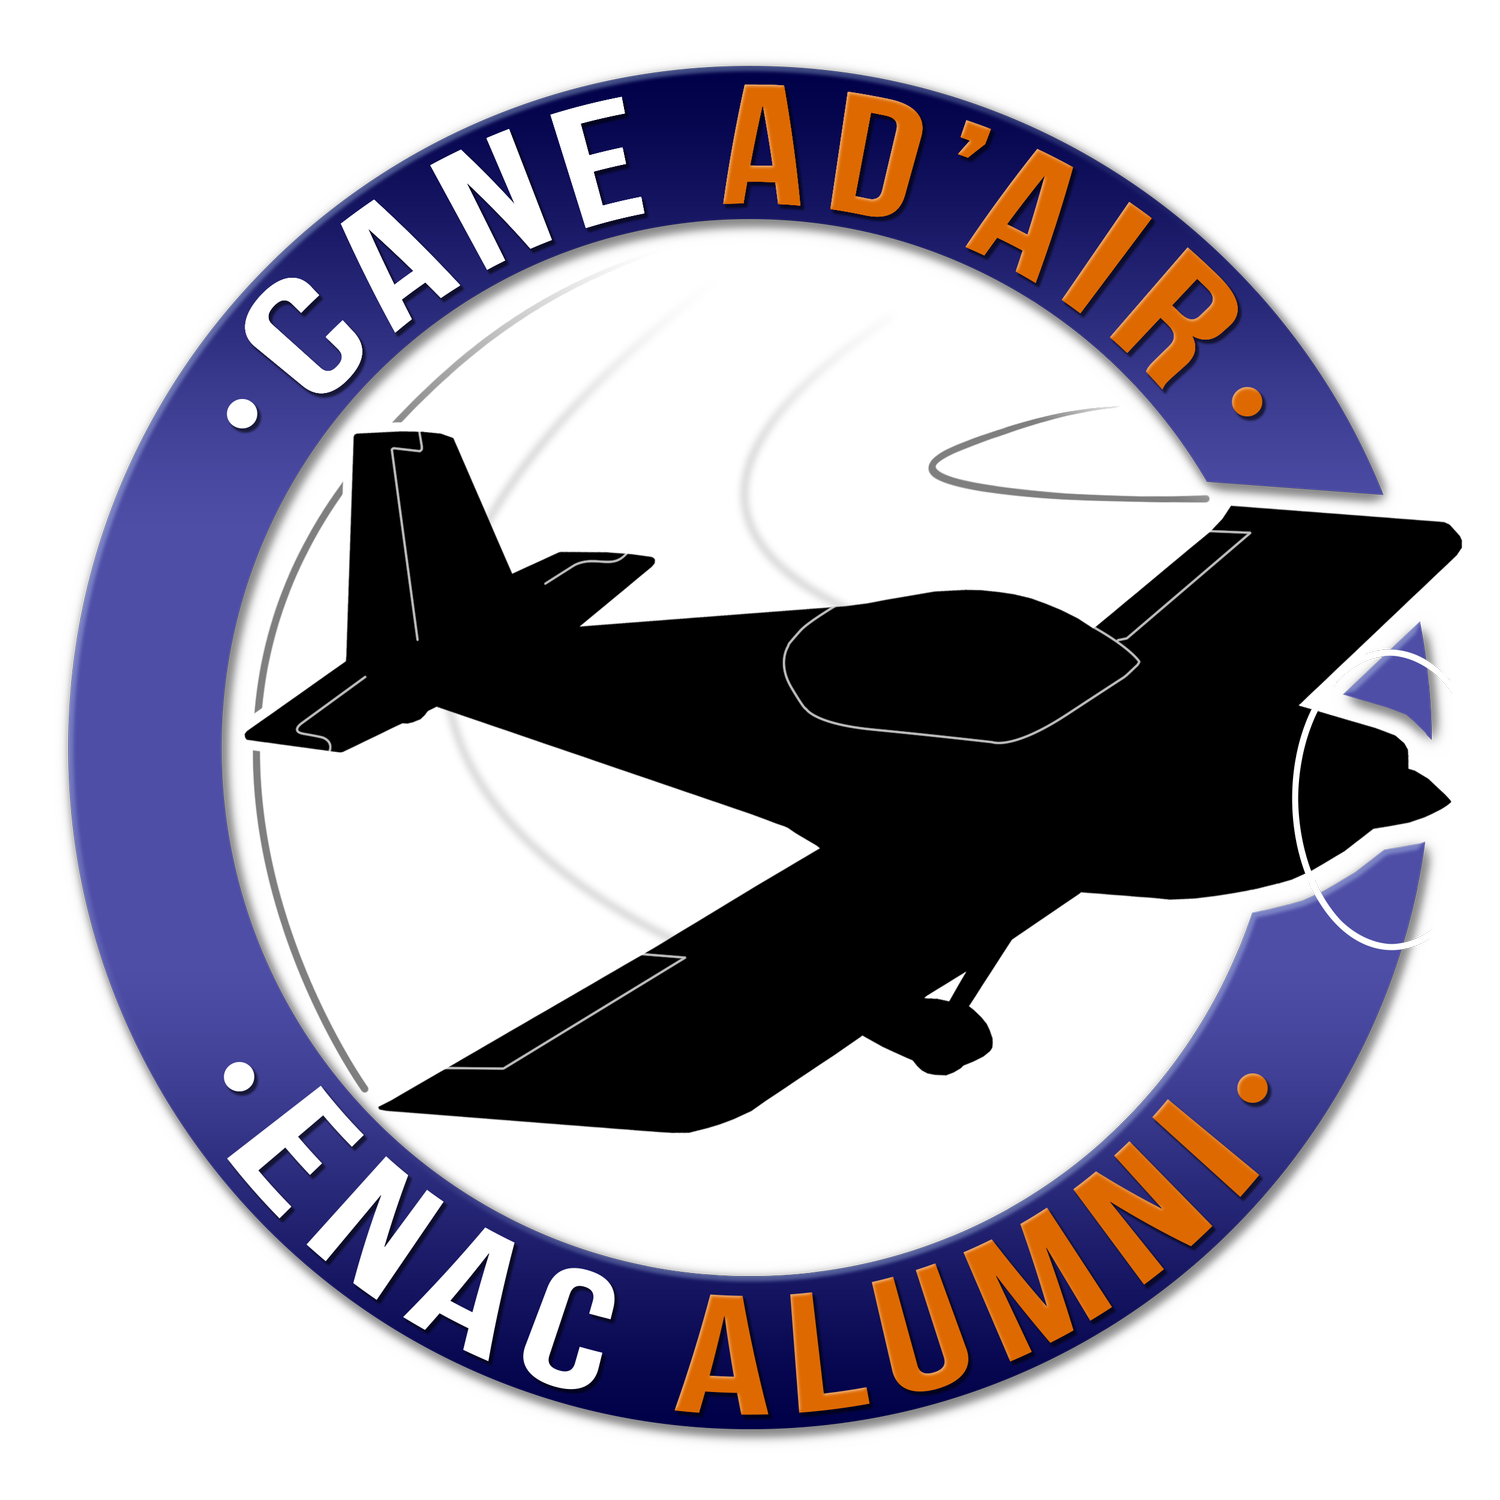 Présentation du Projet CANE Ad’Air : Construction d’un avion par la communauté ENAC